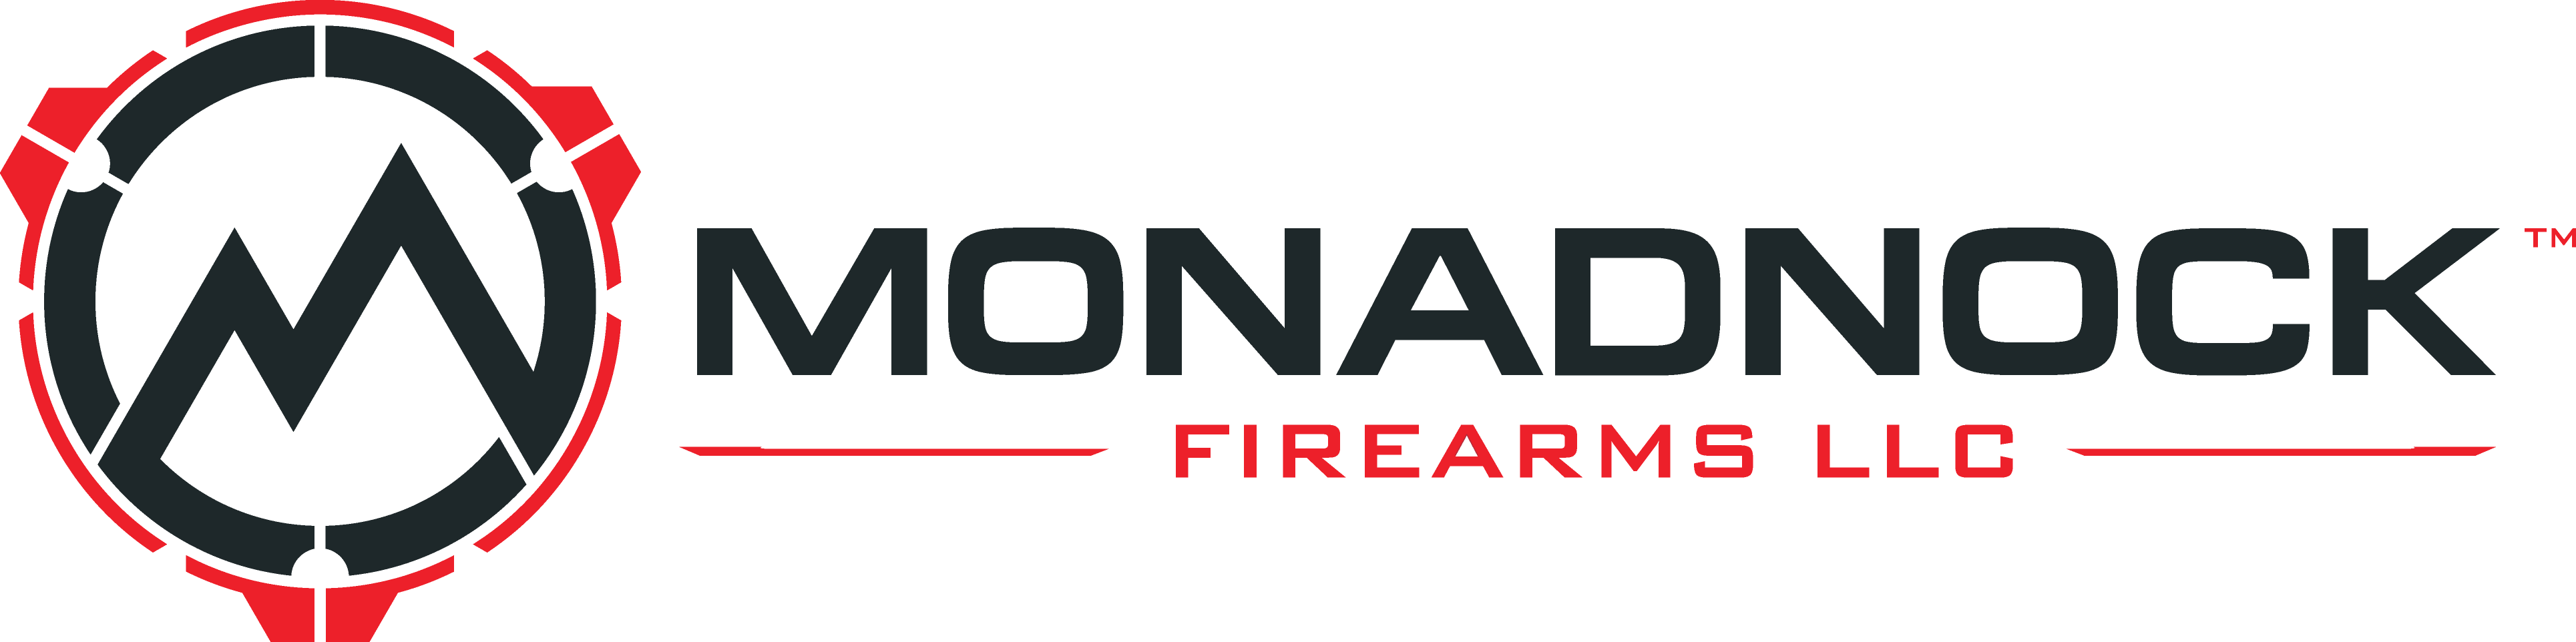 Monadnock Firearms